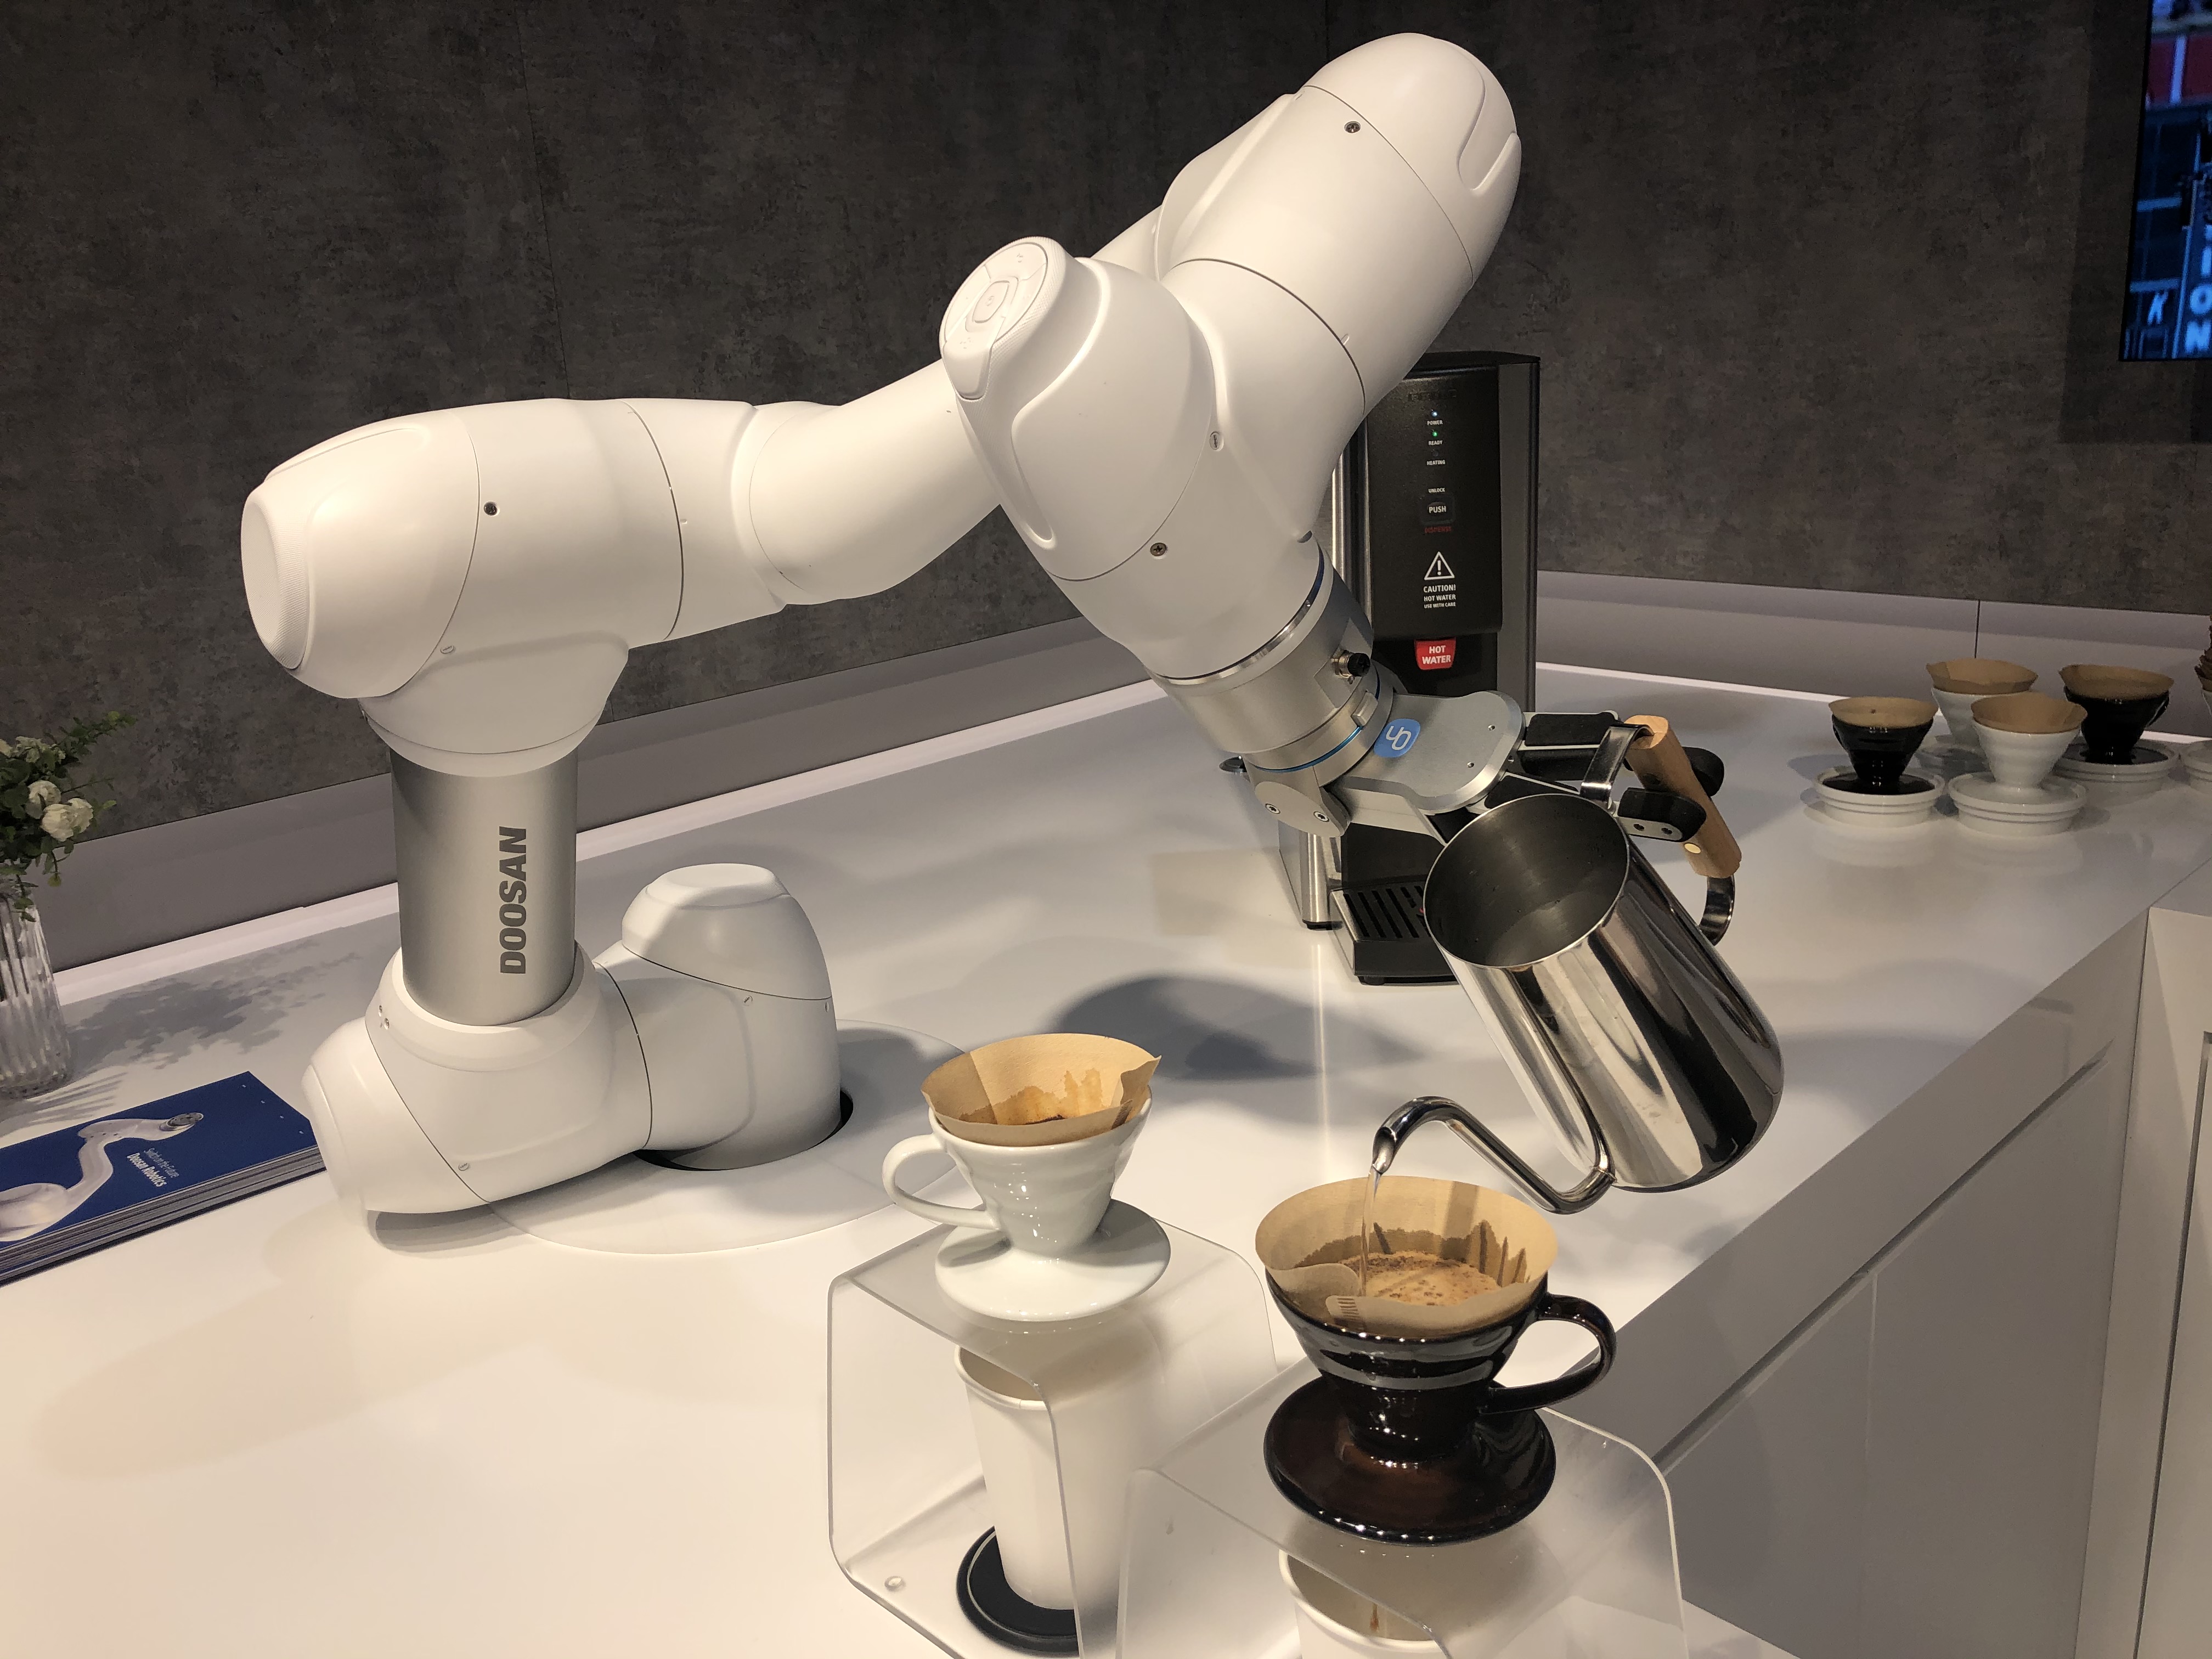 ‘로봇드립’ 커피 내리는 ‘협동로봇’